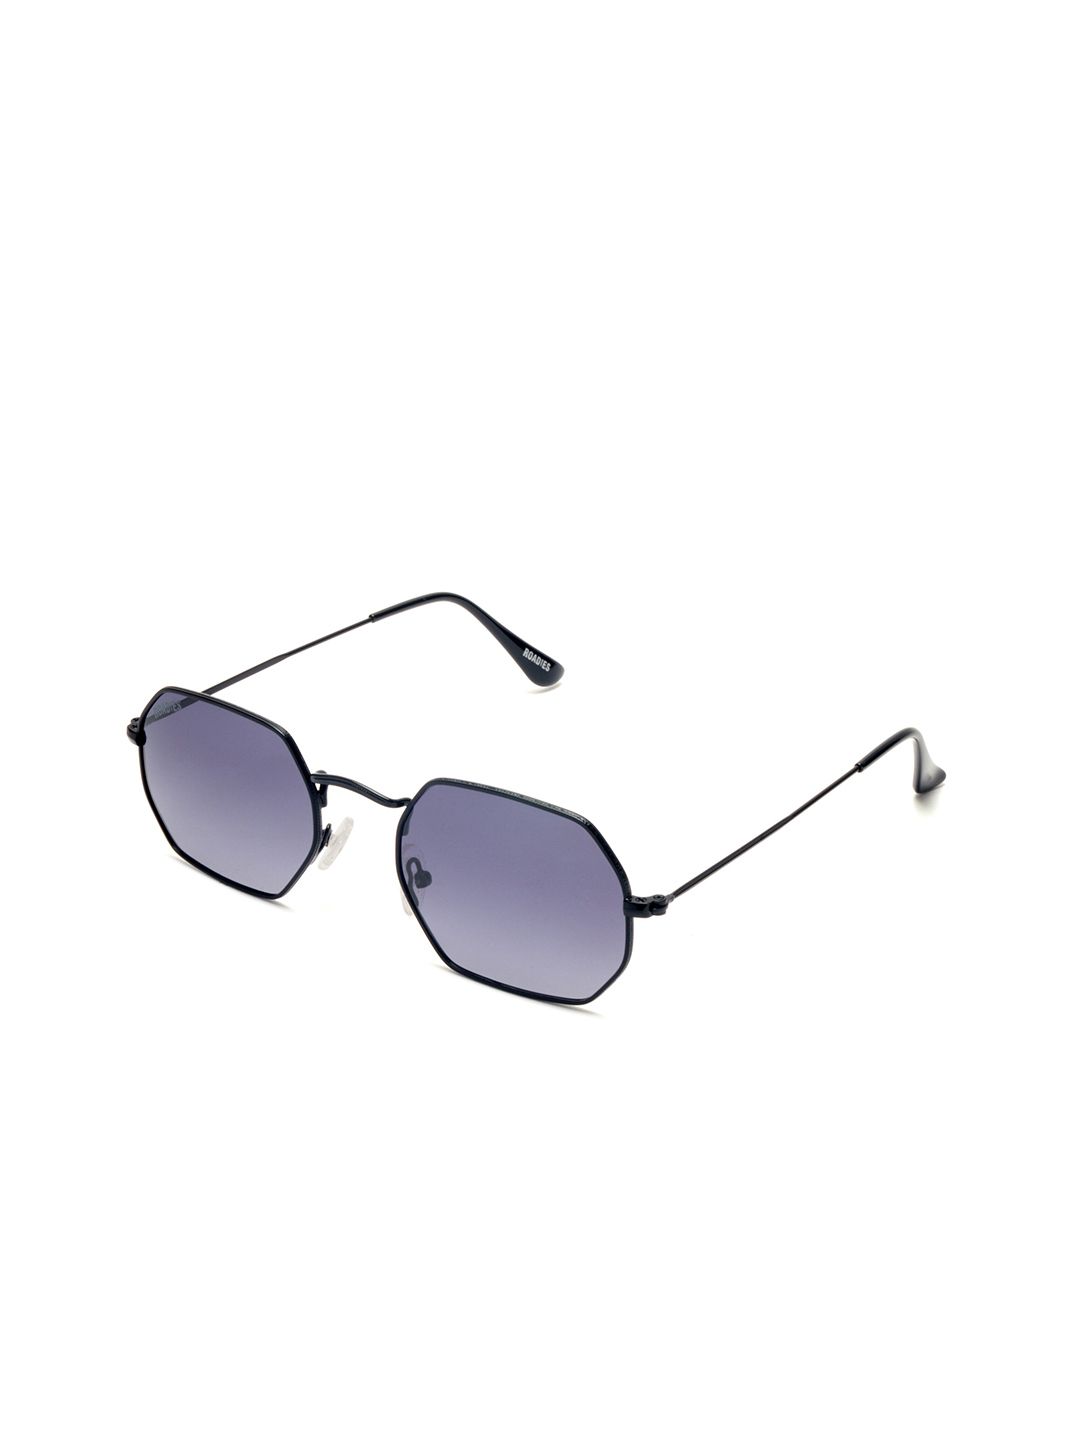 Roadies Unisex Blue Lens & Black Sunglasses with Polarised Lens RD-106-C4 Price in India